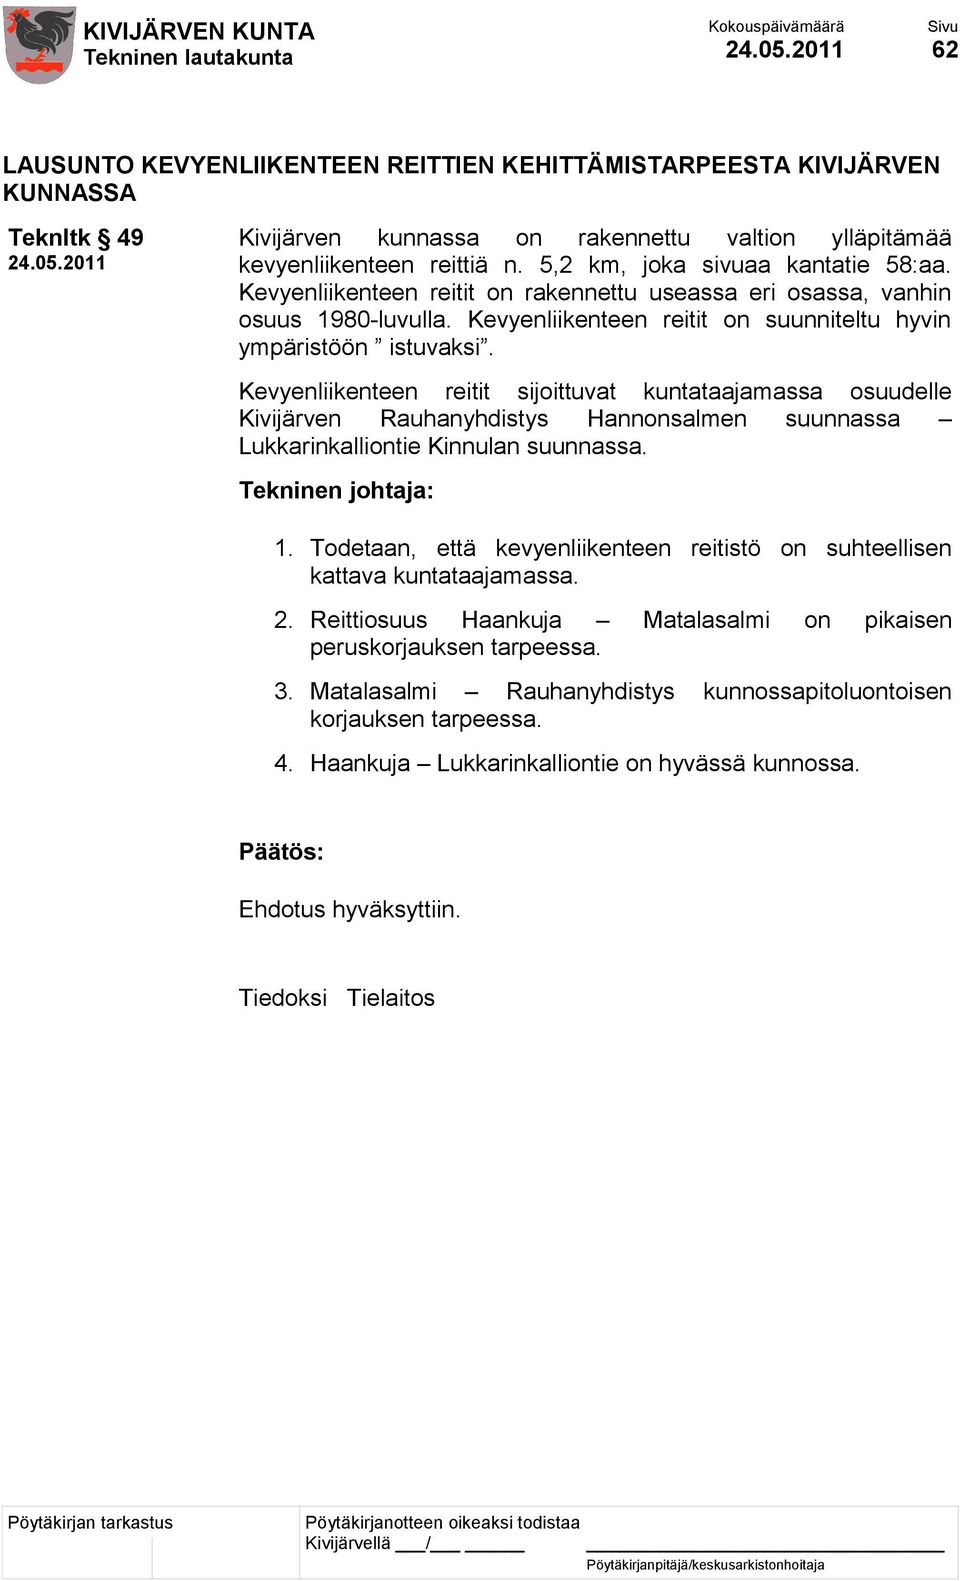 Kevyenliikenteen reitit sijoittuvat kuntataajamassa osuudelle Kivijärven Rauhanyhdistys Hannonsalmen suunnassa Lukkarinkalliontie Kinnulan suunnassa. 1.